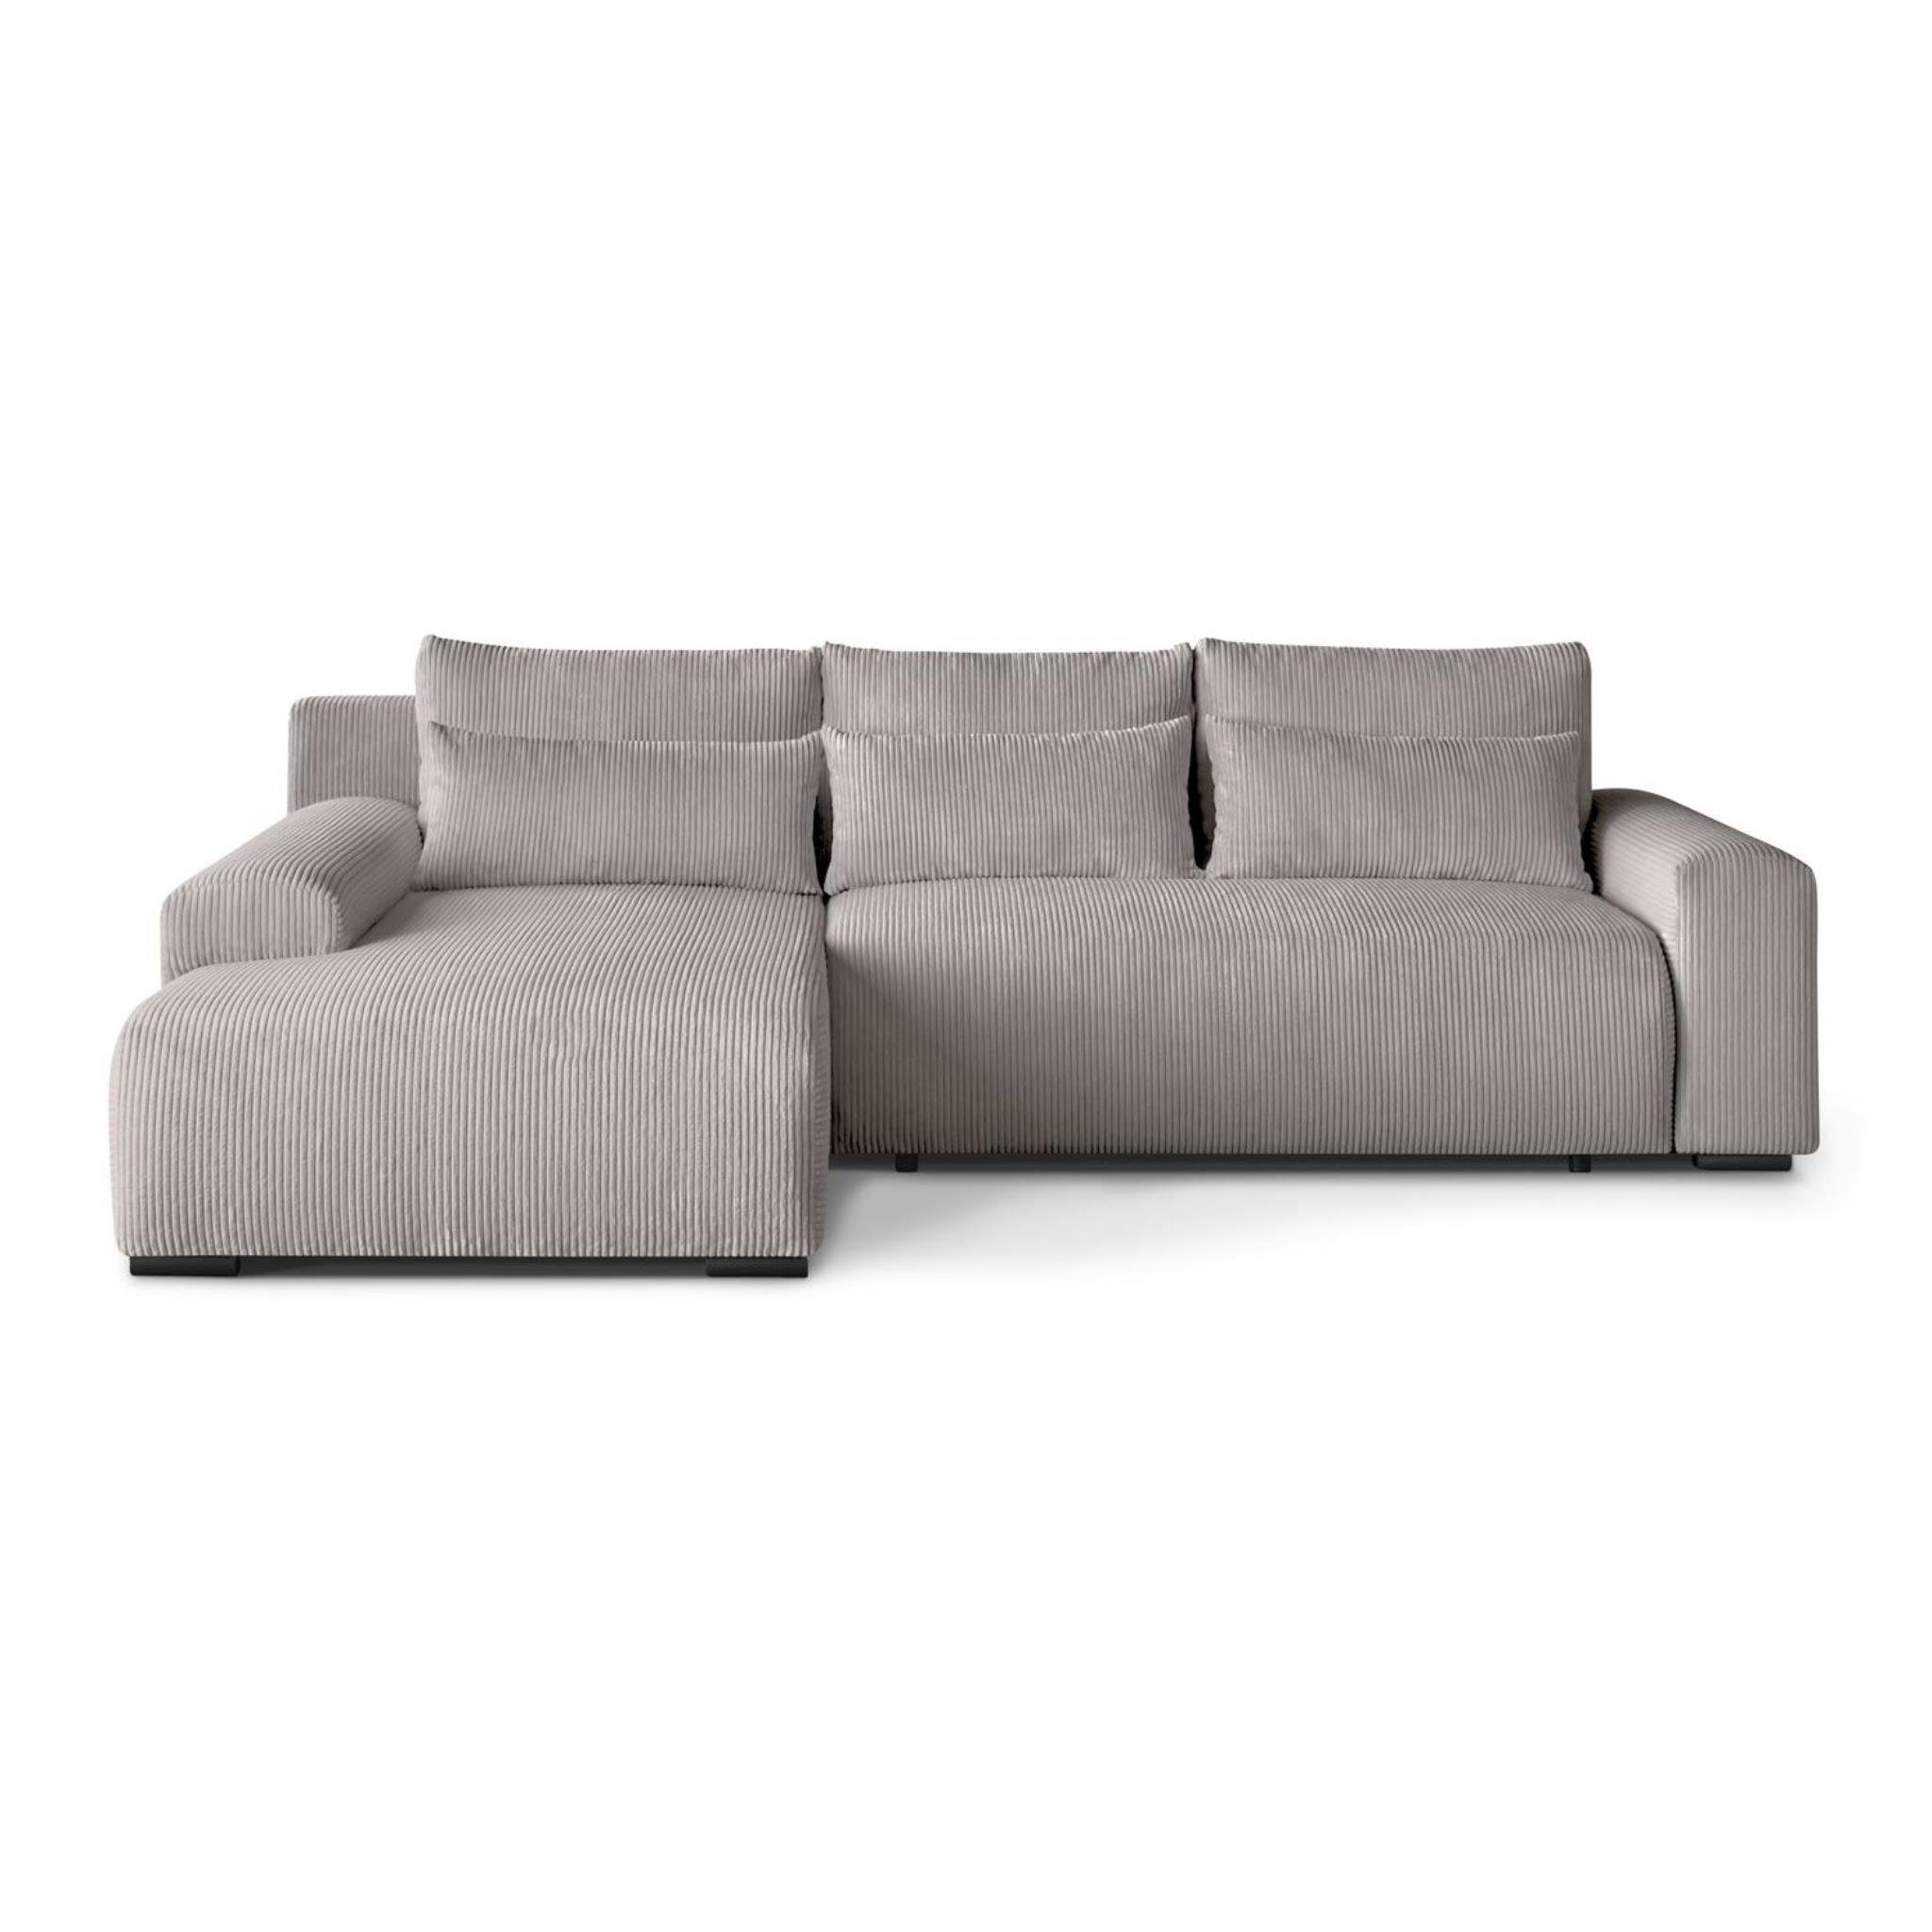 Beautysofa inkl. Corner Design, Benny, Schlaffunktion, aus Ecksofa Cordstoff stilvoll Sofa im Polsterecke modernes L-förmiges Wellenfedern, Bettkasten,